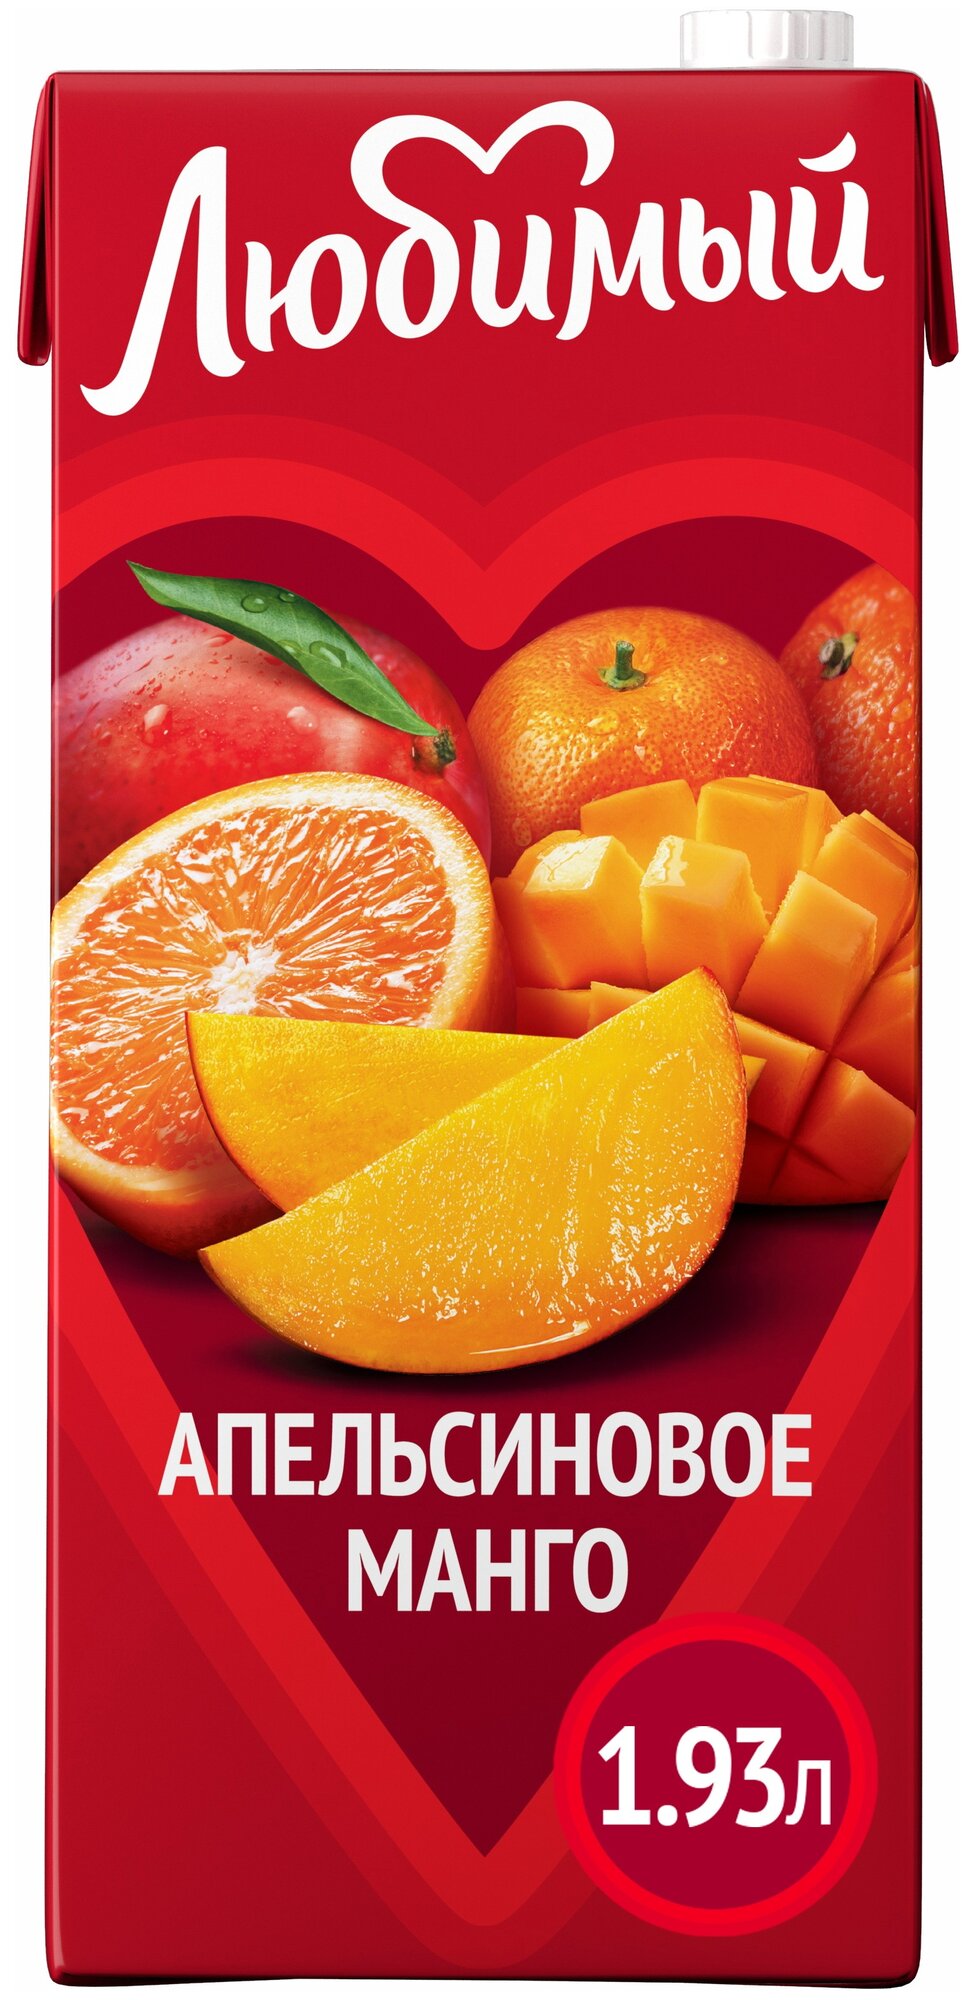 Напиток сокосодержащий Любимый Апельсиновое манго с мякотью